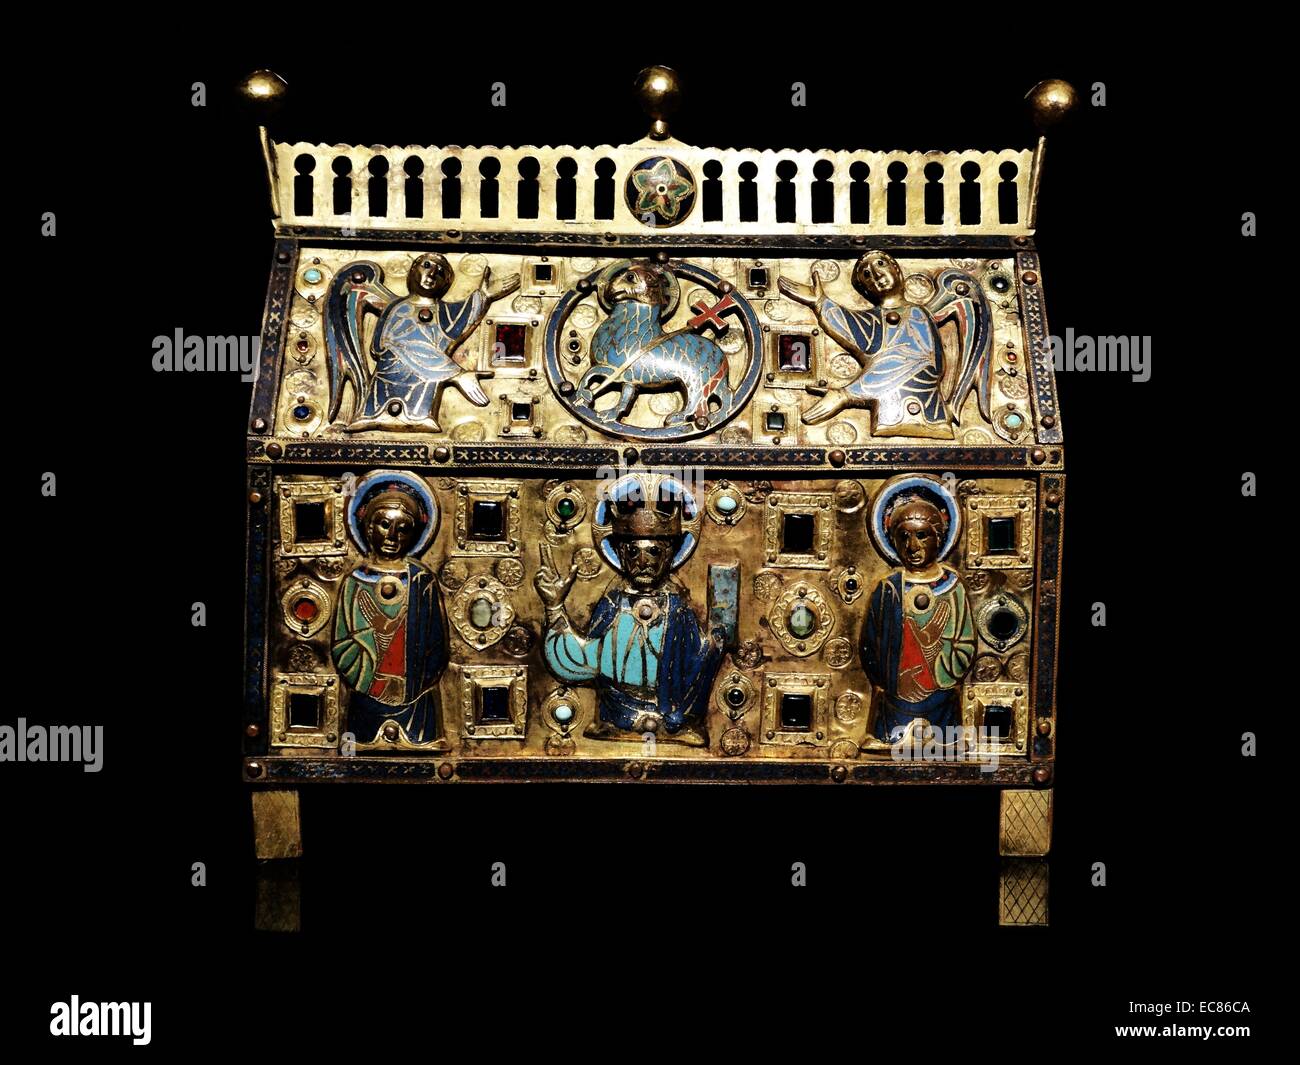 Relicario decorado con Cristo, Los Santos y Los Ángeles. Fecha del siglo XIII. Foto de stock